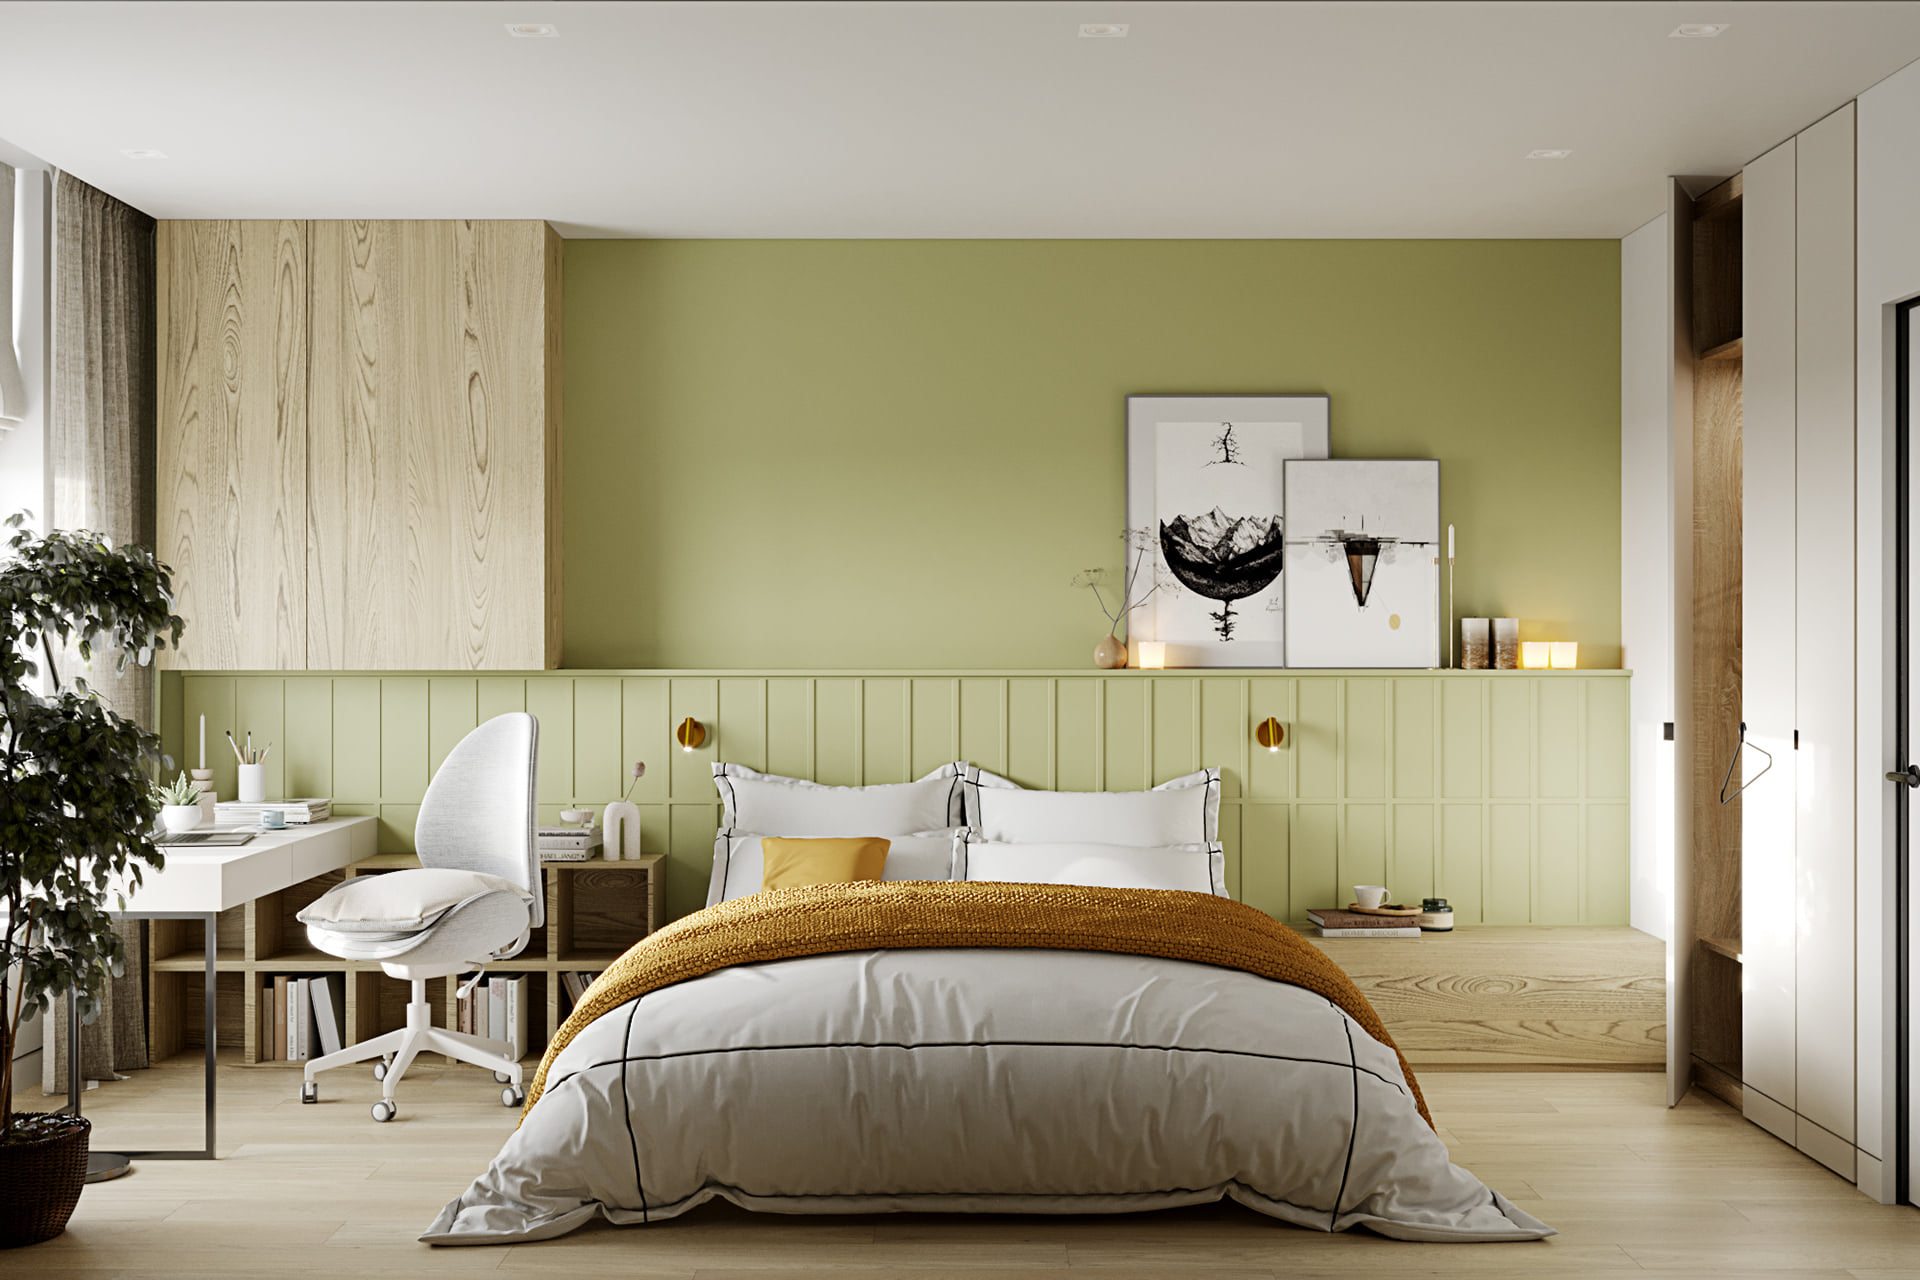 Mẫu thiết kế phòng ngủ tông màu xanh tạo cảm giác nữ tính và ấm cúng